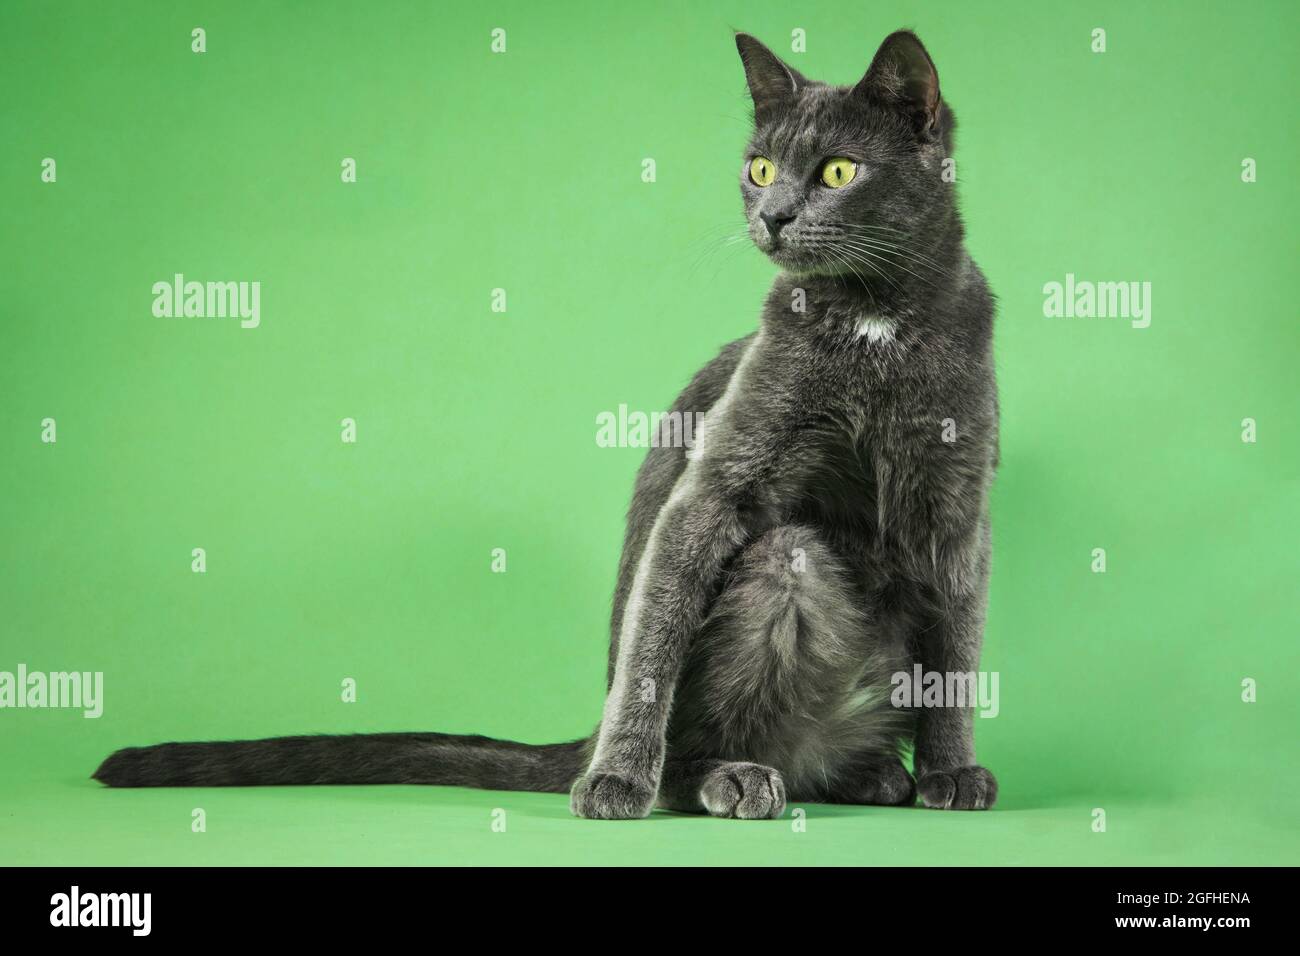 Eine junge graue Katze mit einer humorvollen Pose auf einer grünen Studiokulisse. Stockfoto